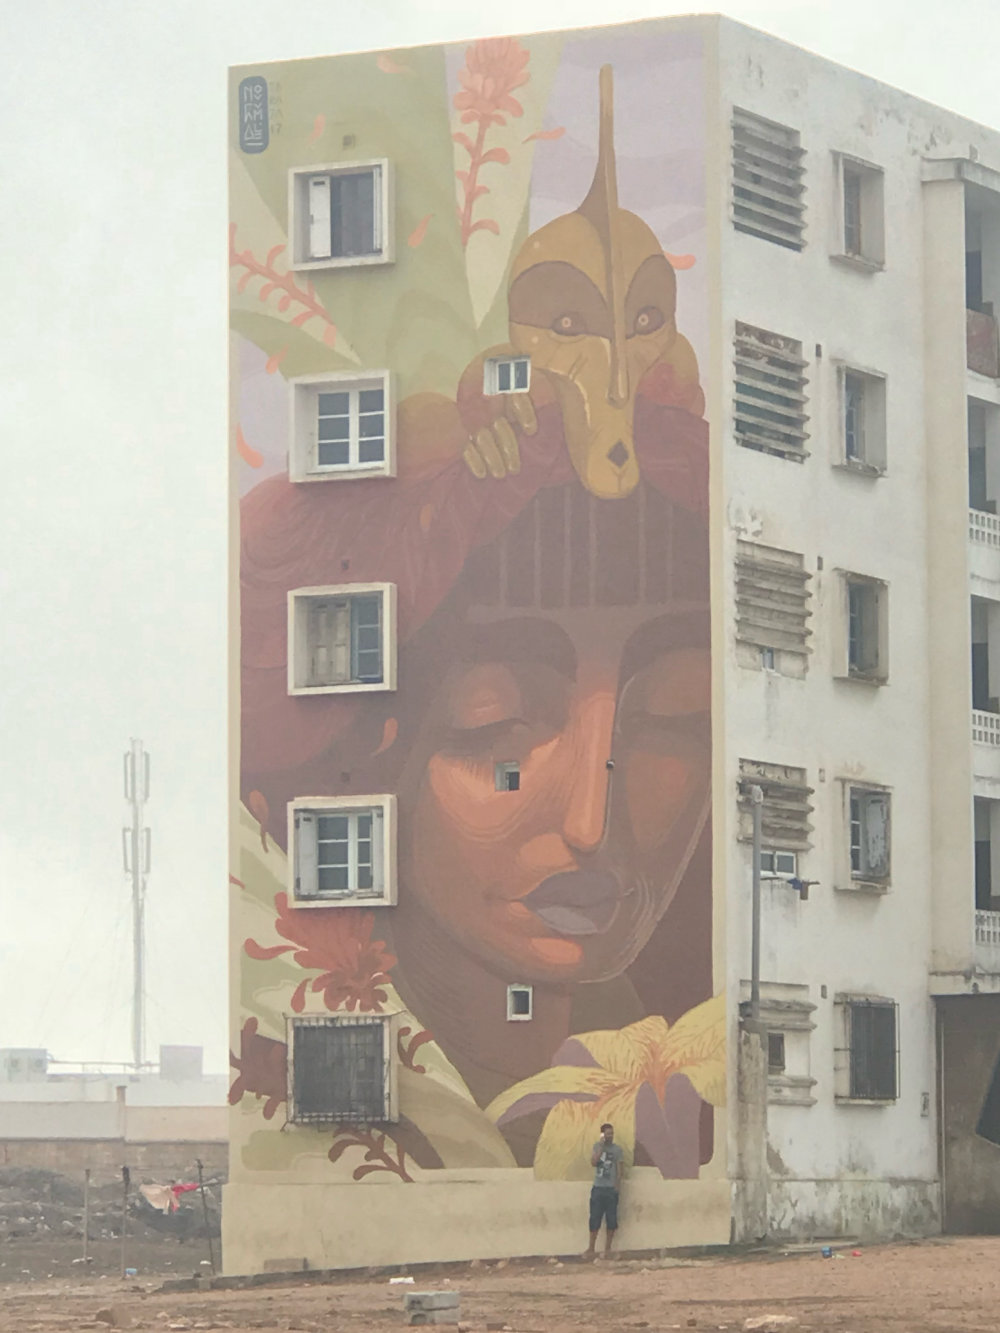 mural in Casablanca by artist unknown.